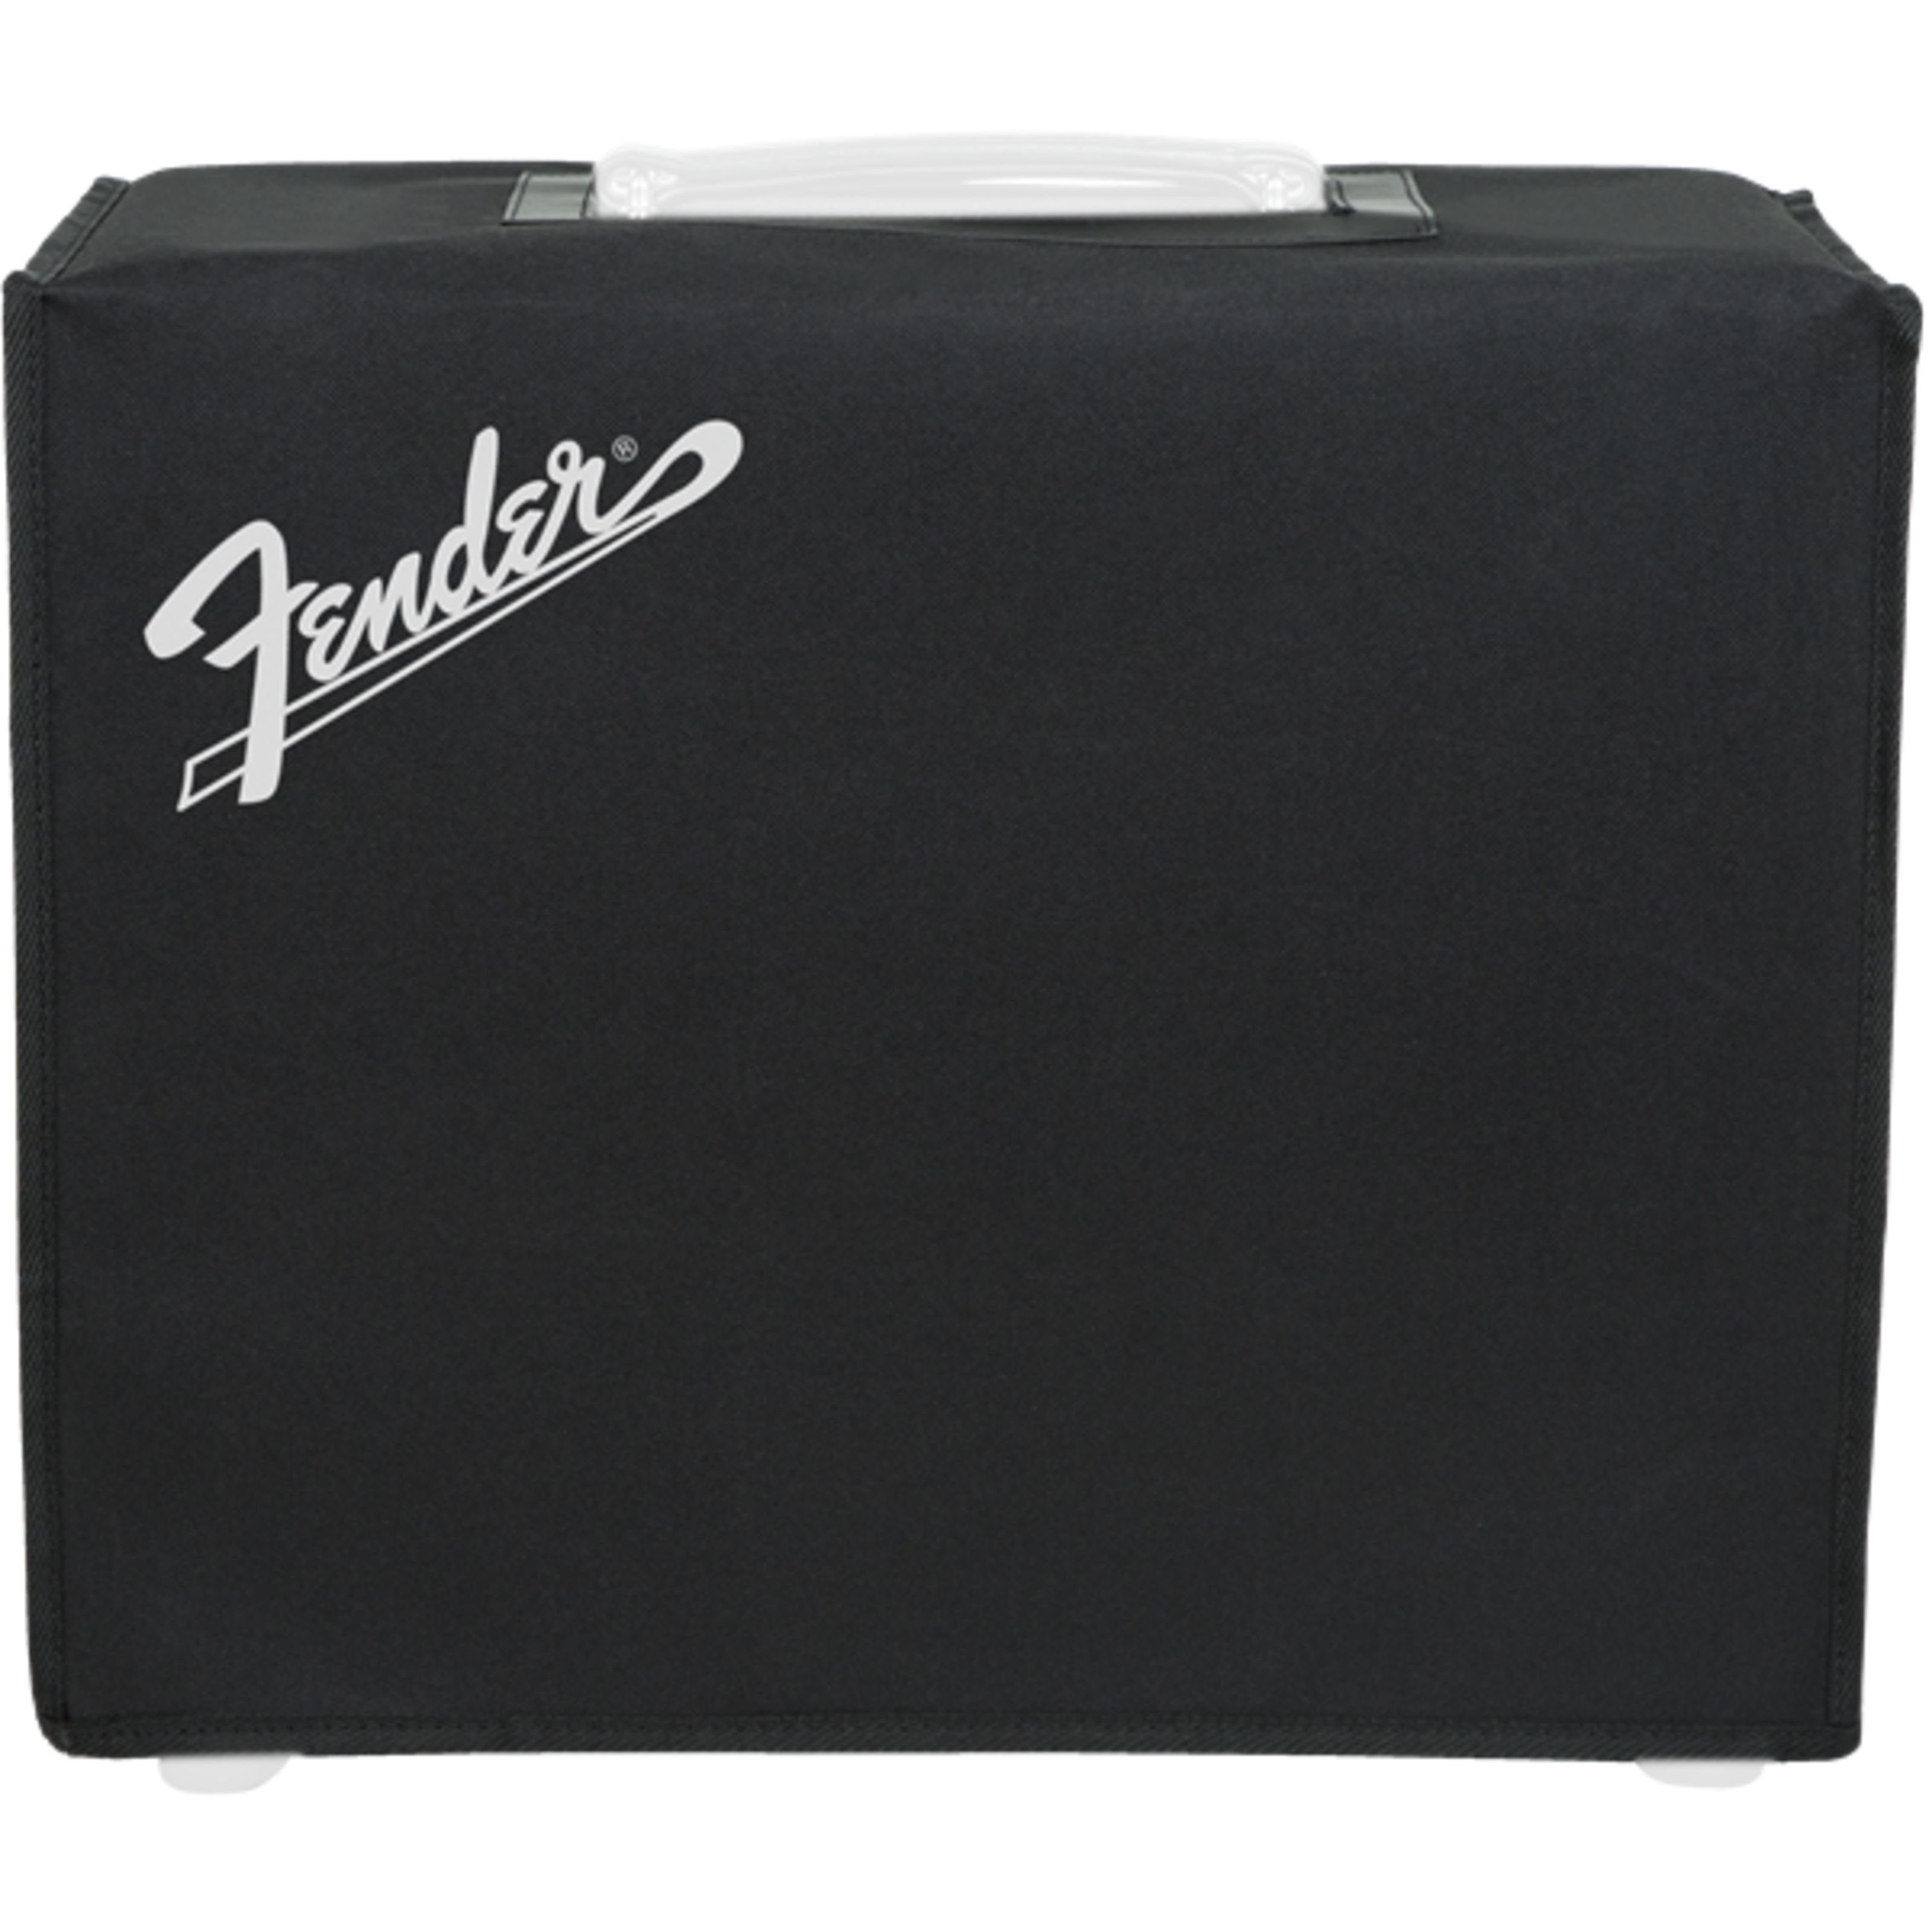 Fender Lautsprechertasche (Amp Cover LT50 - Cover for Guitar Equipment), Amp Cover Mustang LT50 - Cover für Gitarren Equipment